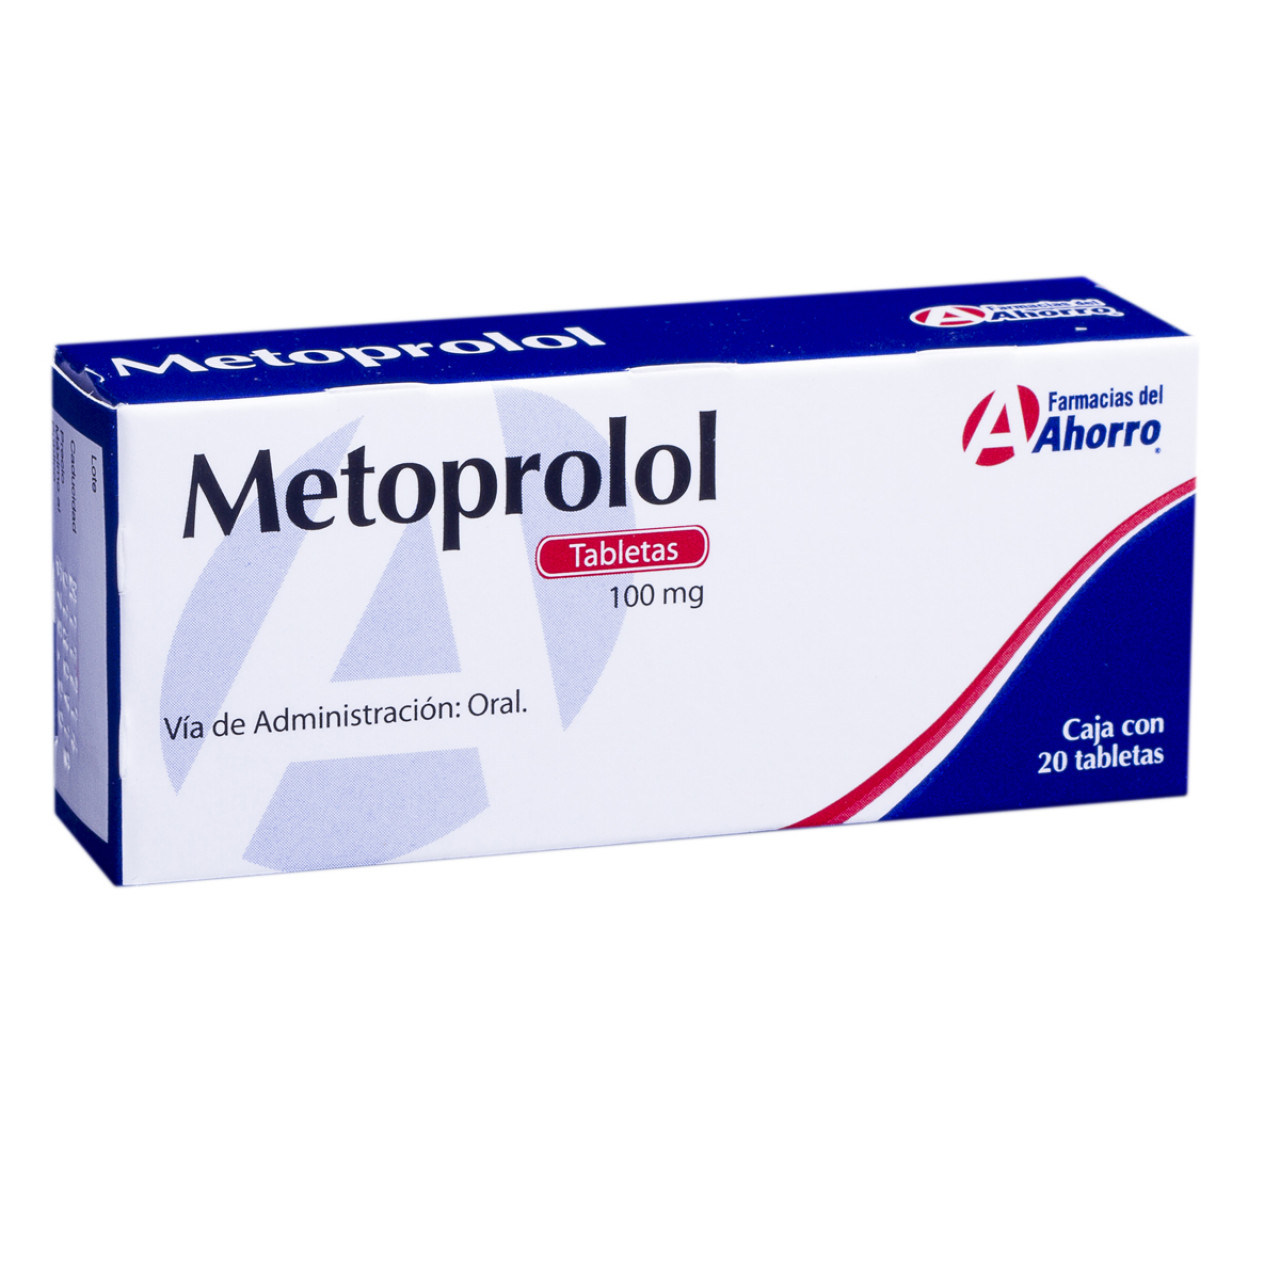 Metoprolol: ¿Qué es y cuánto cuesta?